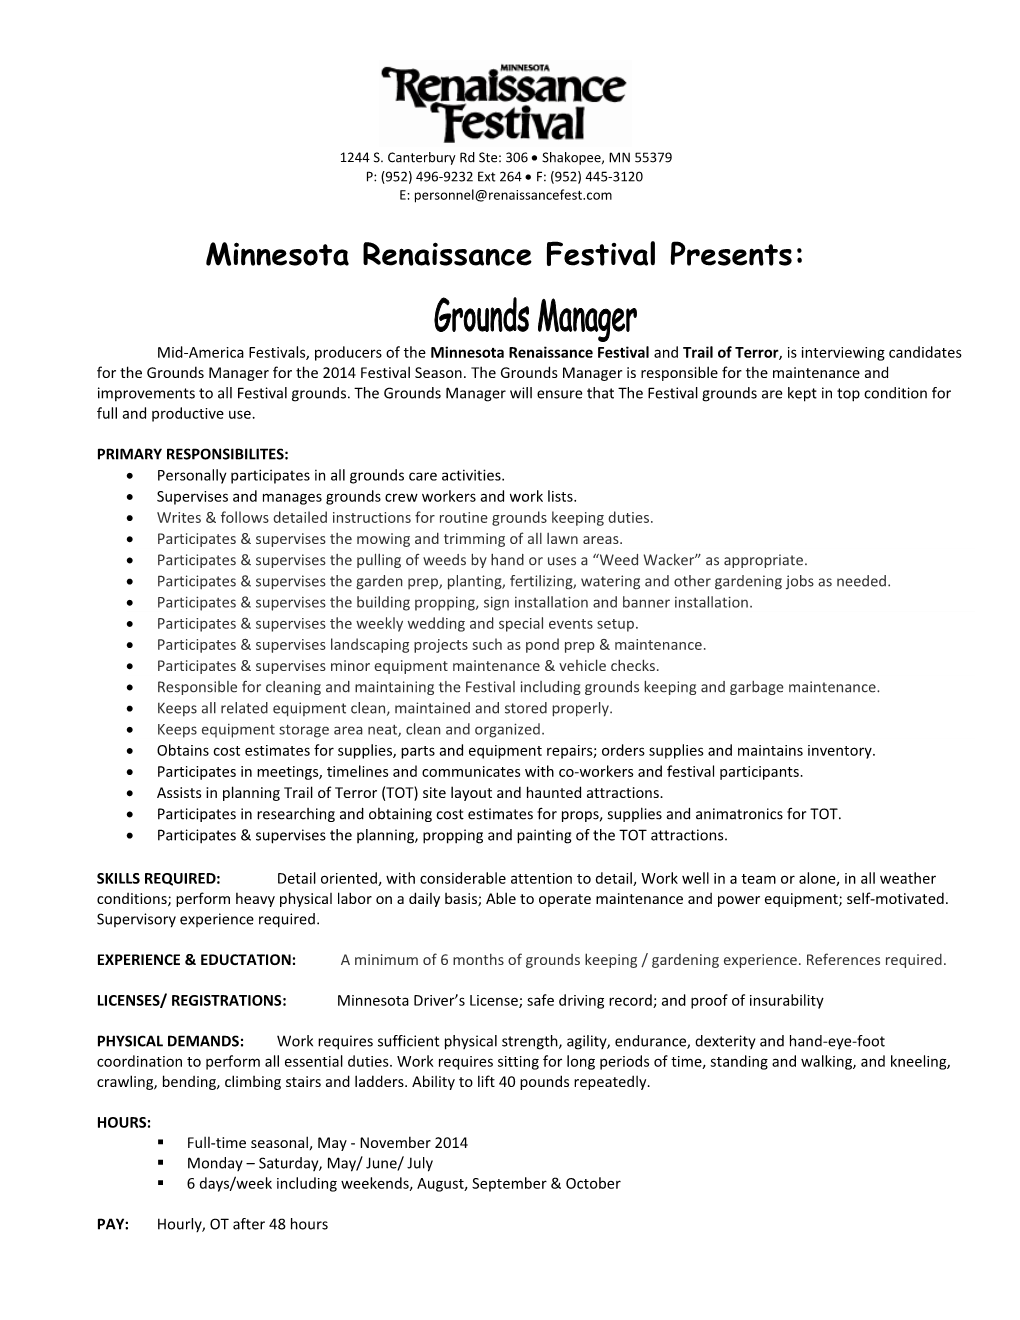 Minnesota Renaissance Festival Presents